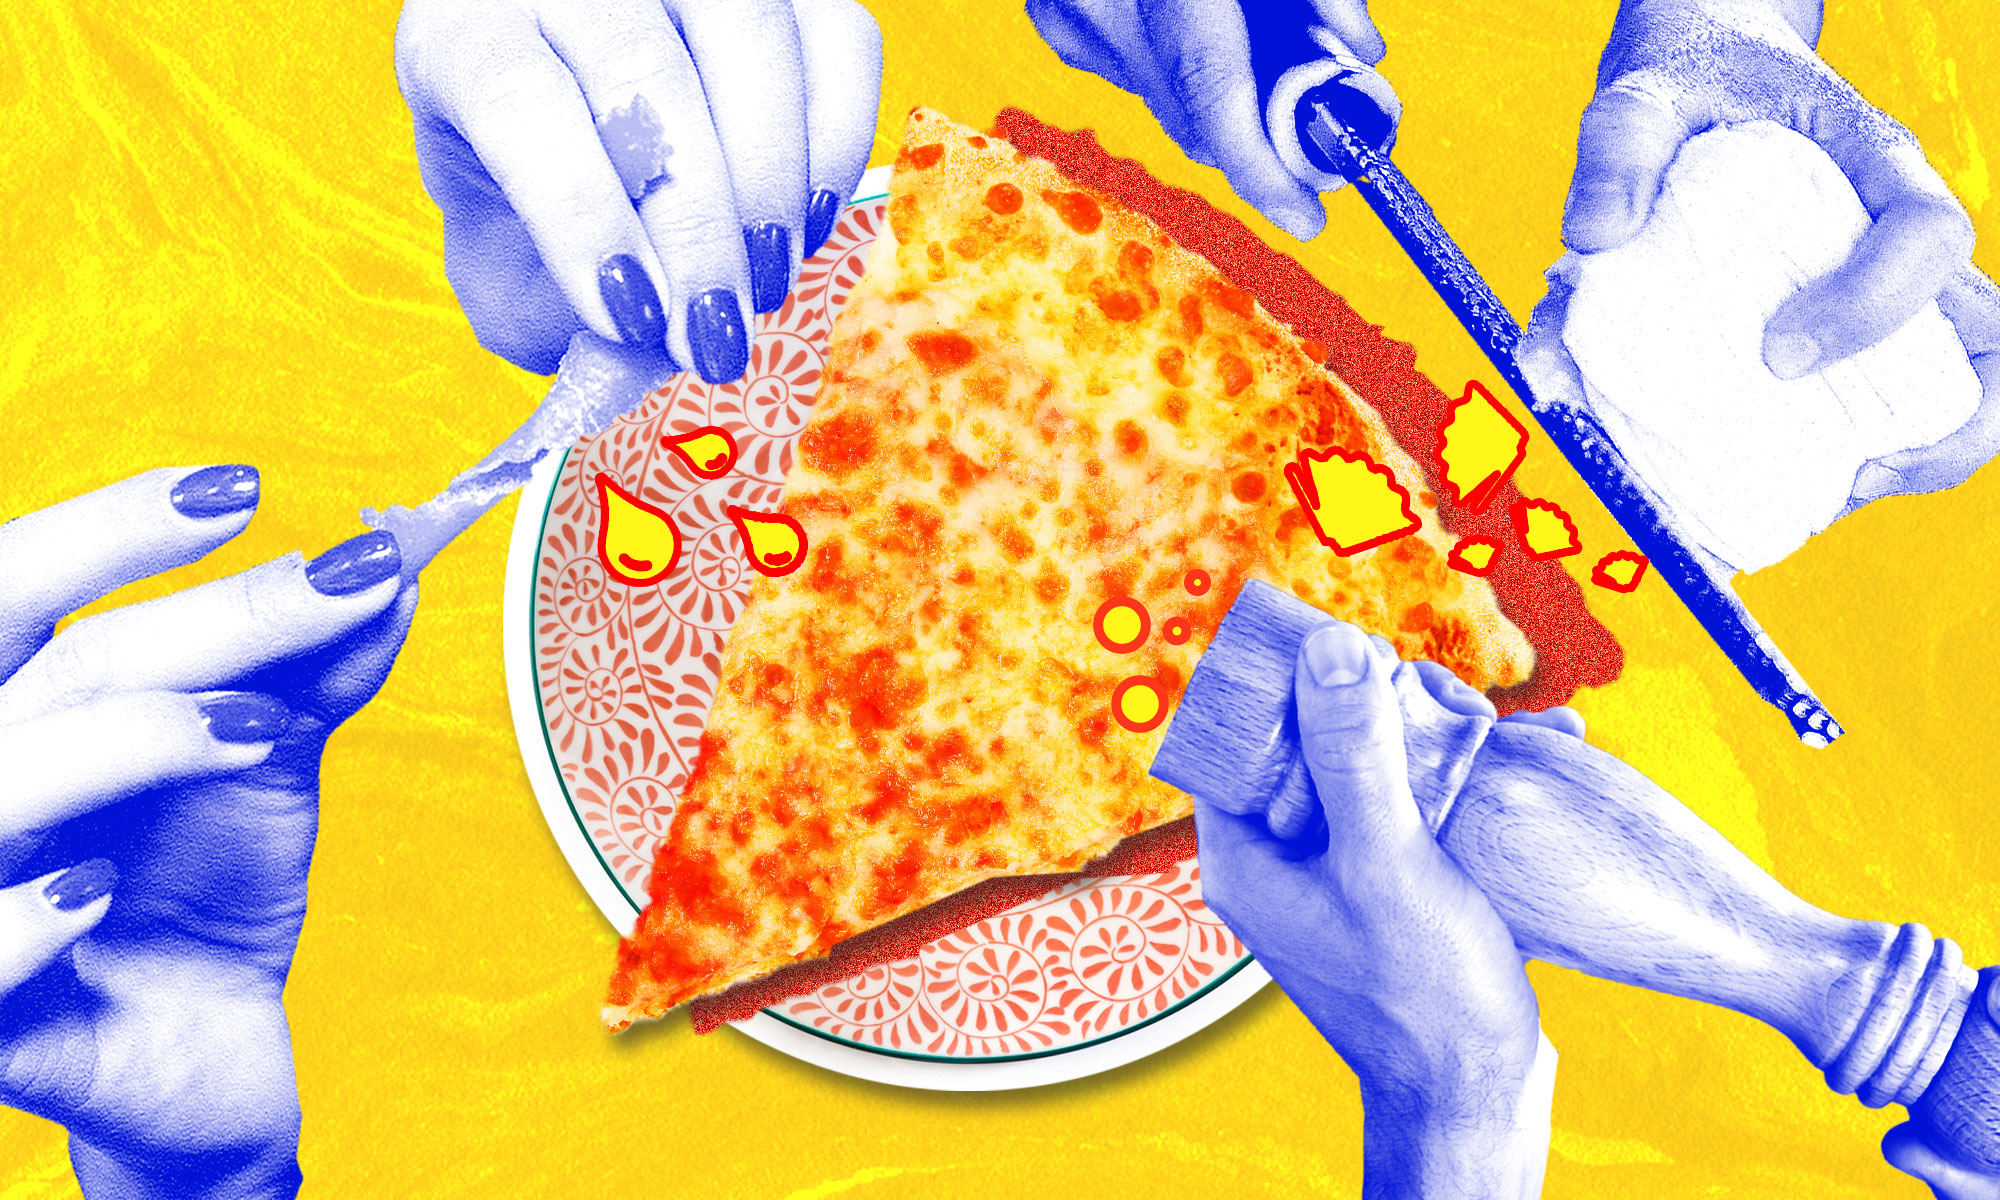 这是一张切片披萨的图片，上面用手磨奶酪，磨胡椒，还加了柠檬皮。